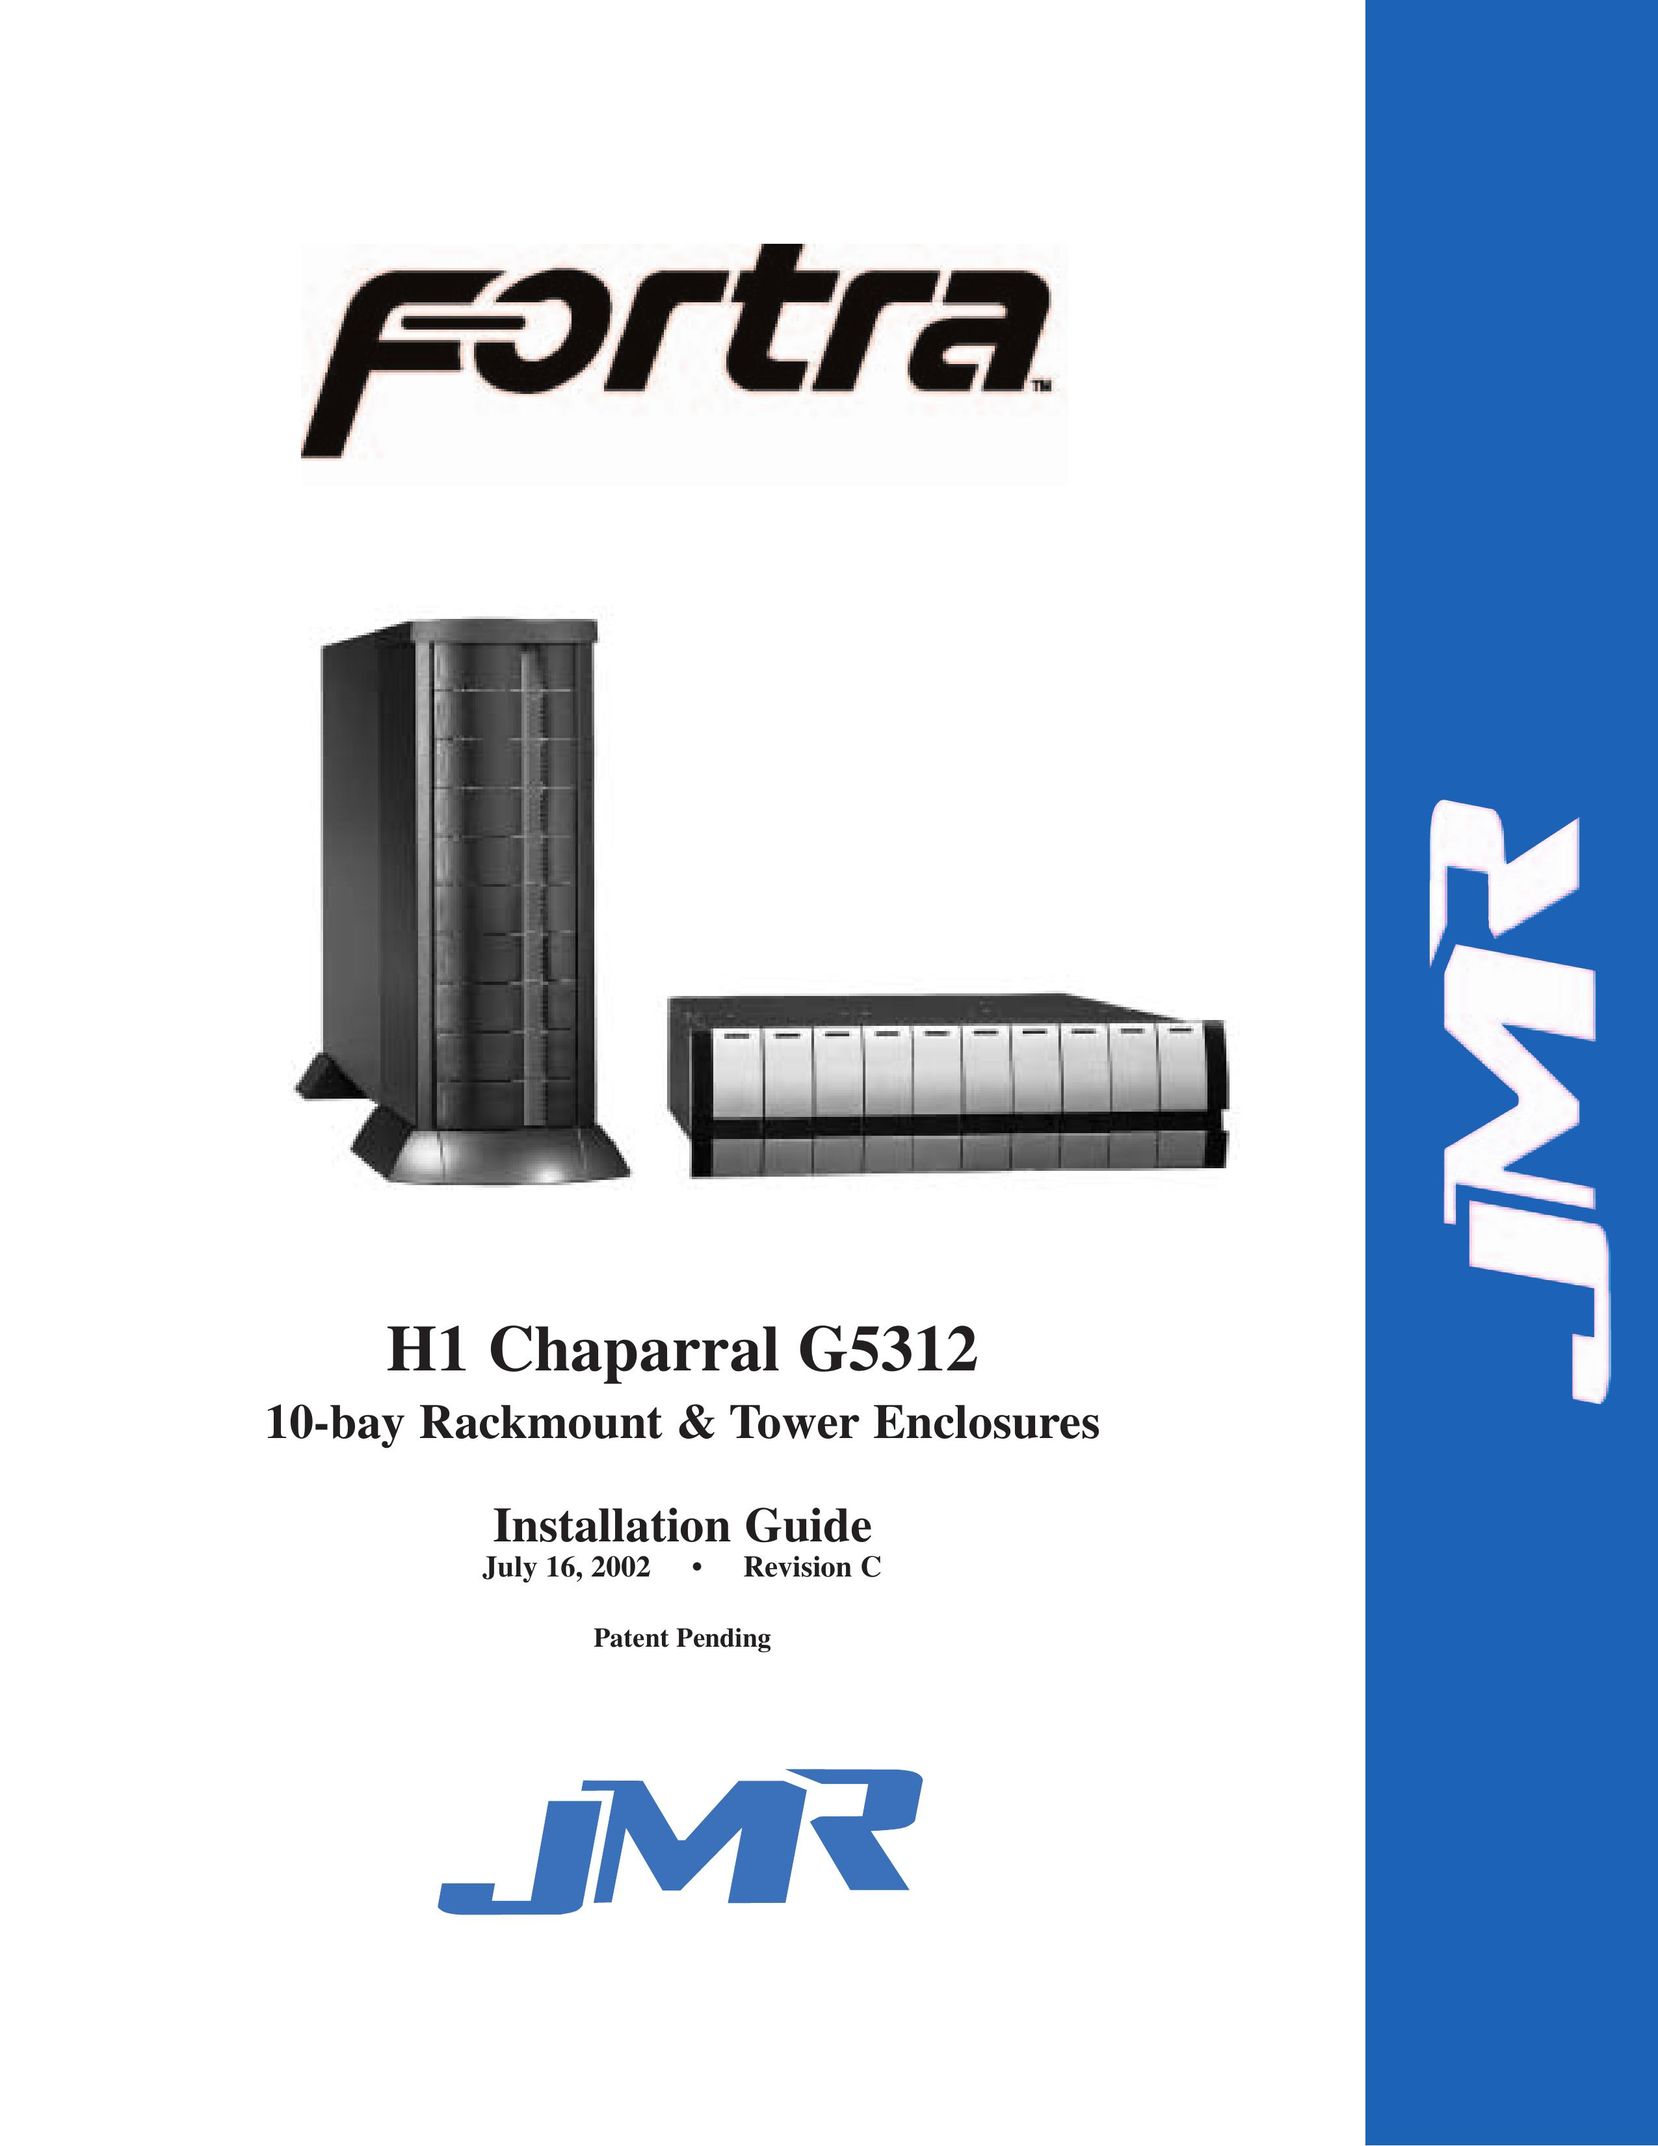 JMR electronic G5312 TV Mount User Manual